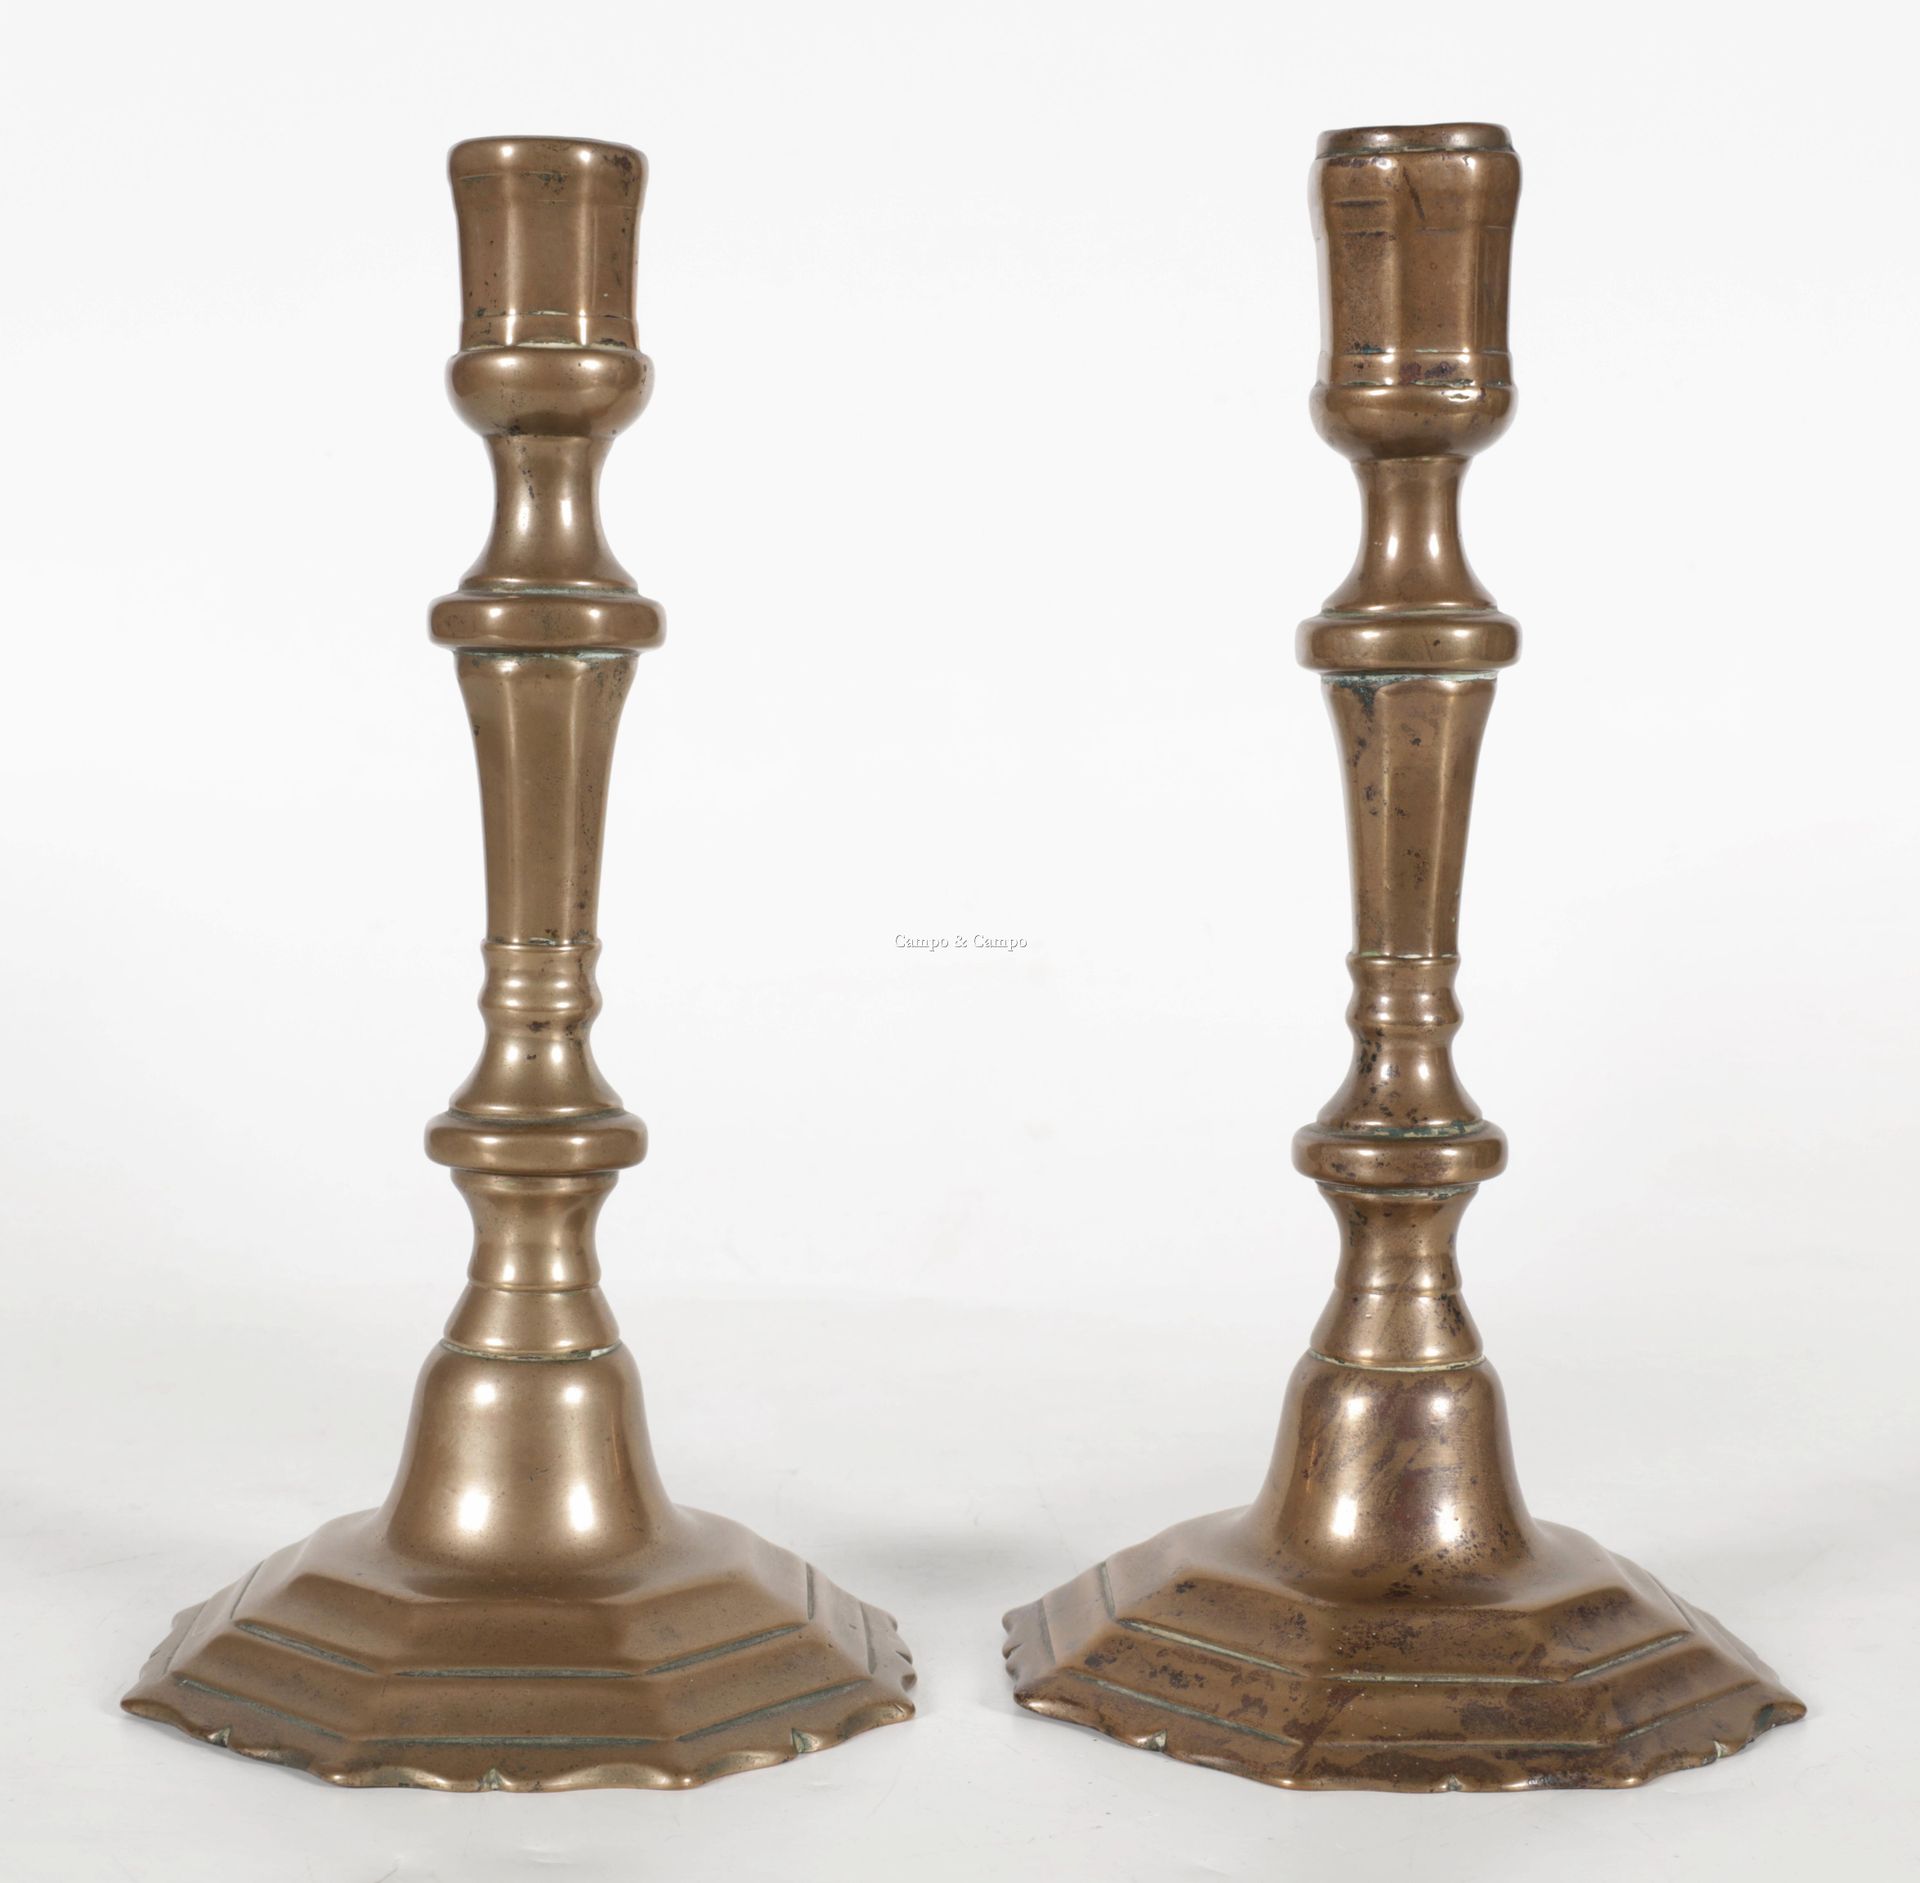 VARIA 一对带栏杆的青铜烛台，18世纪
Paar bronzen kaarsenhouders met balustervormige schacht, 1&hellip;